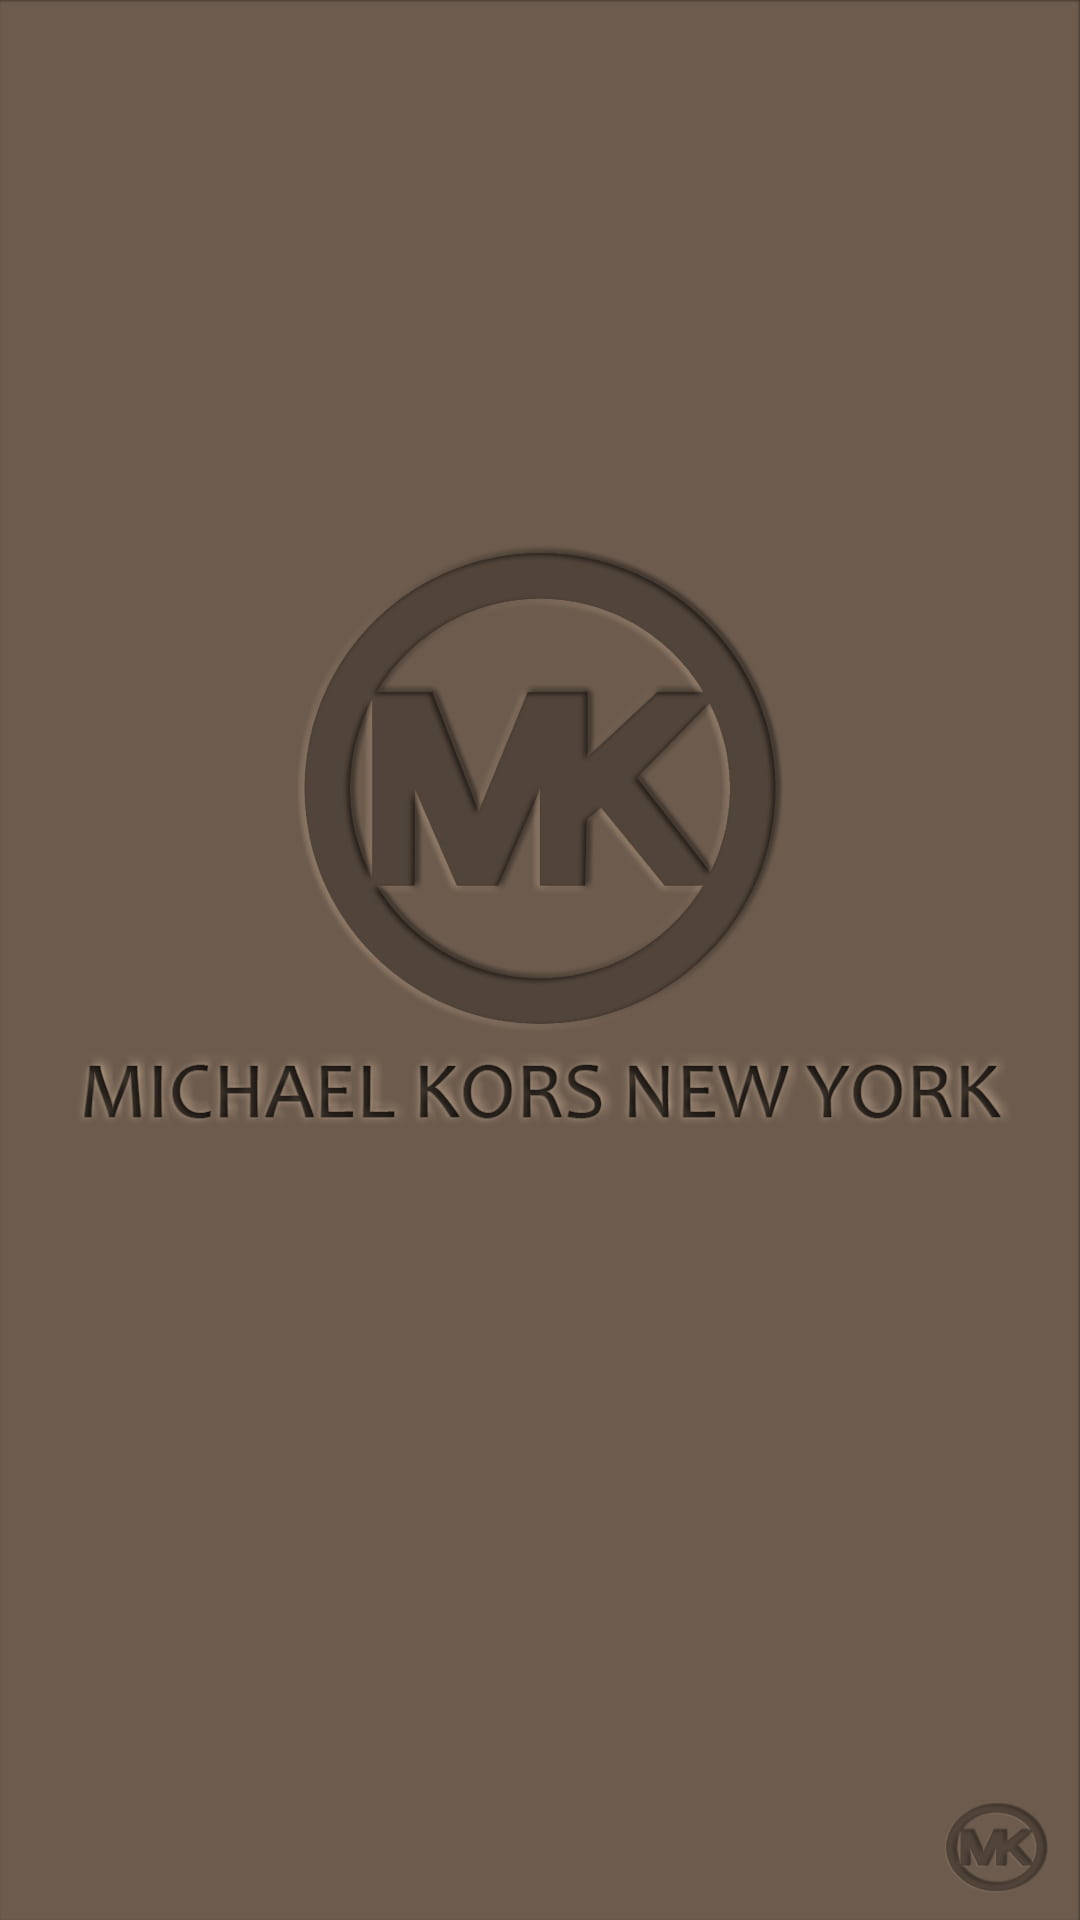 Michael Kors New York Logo